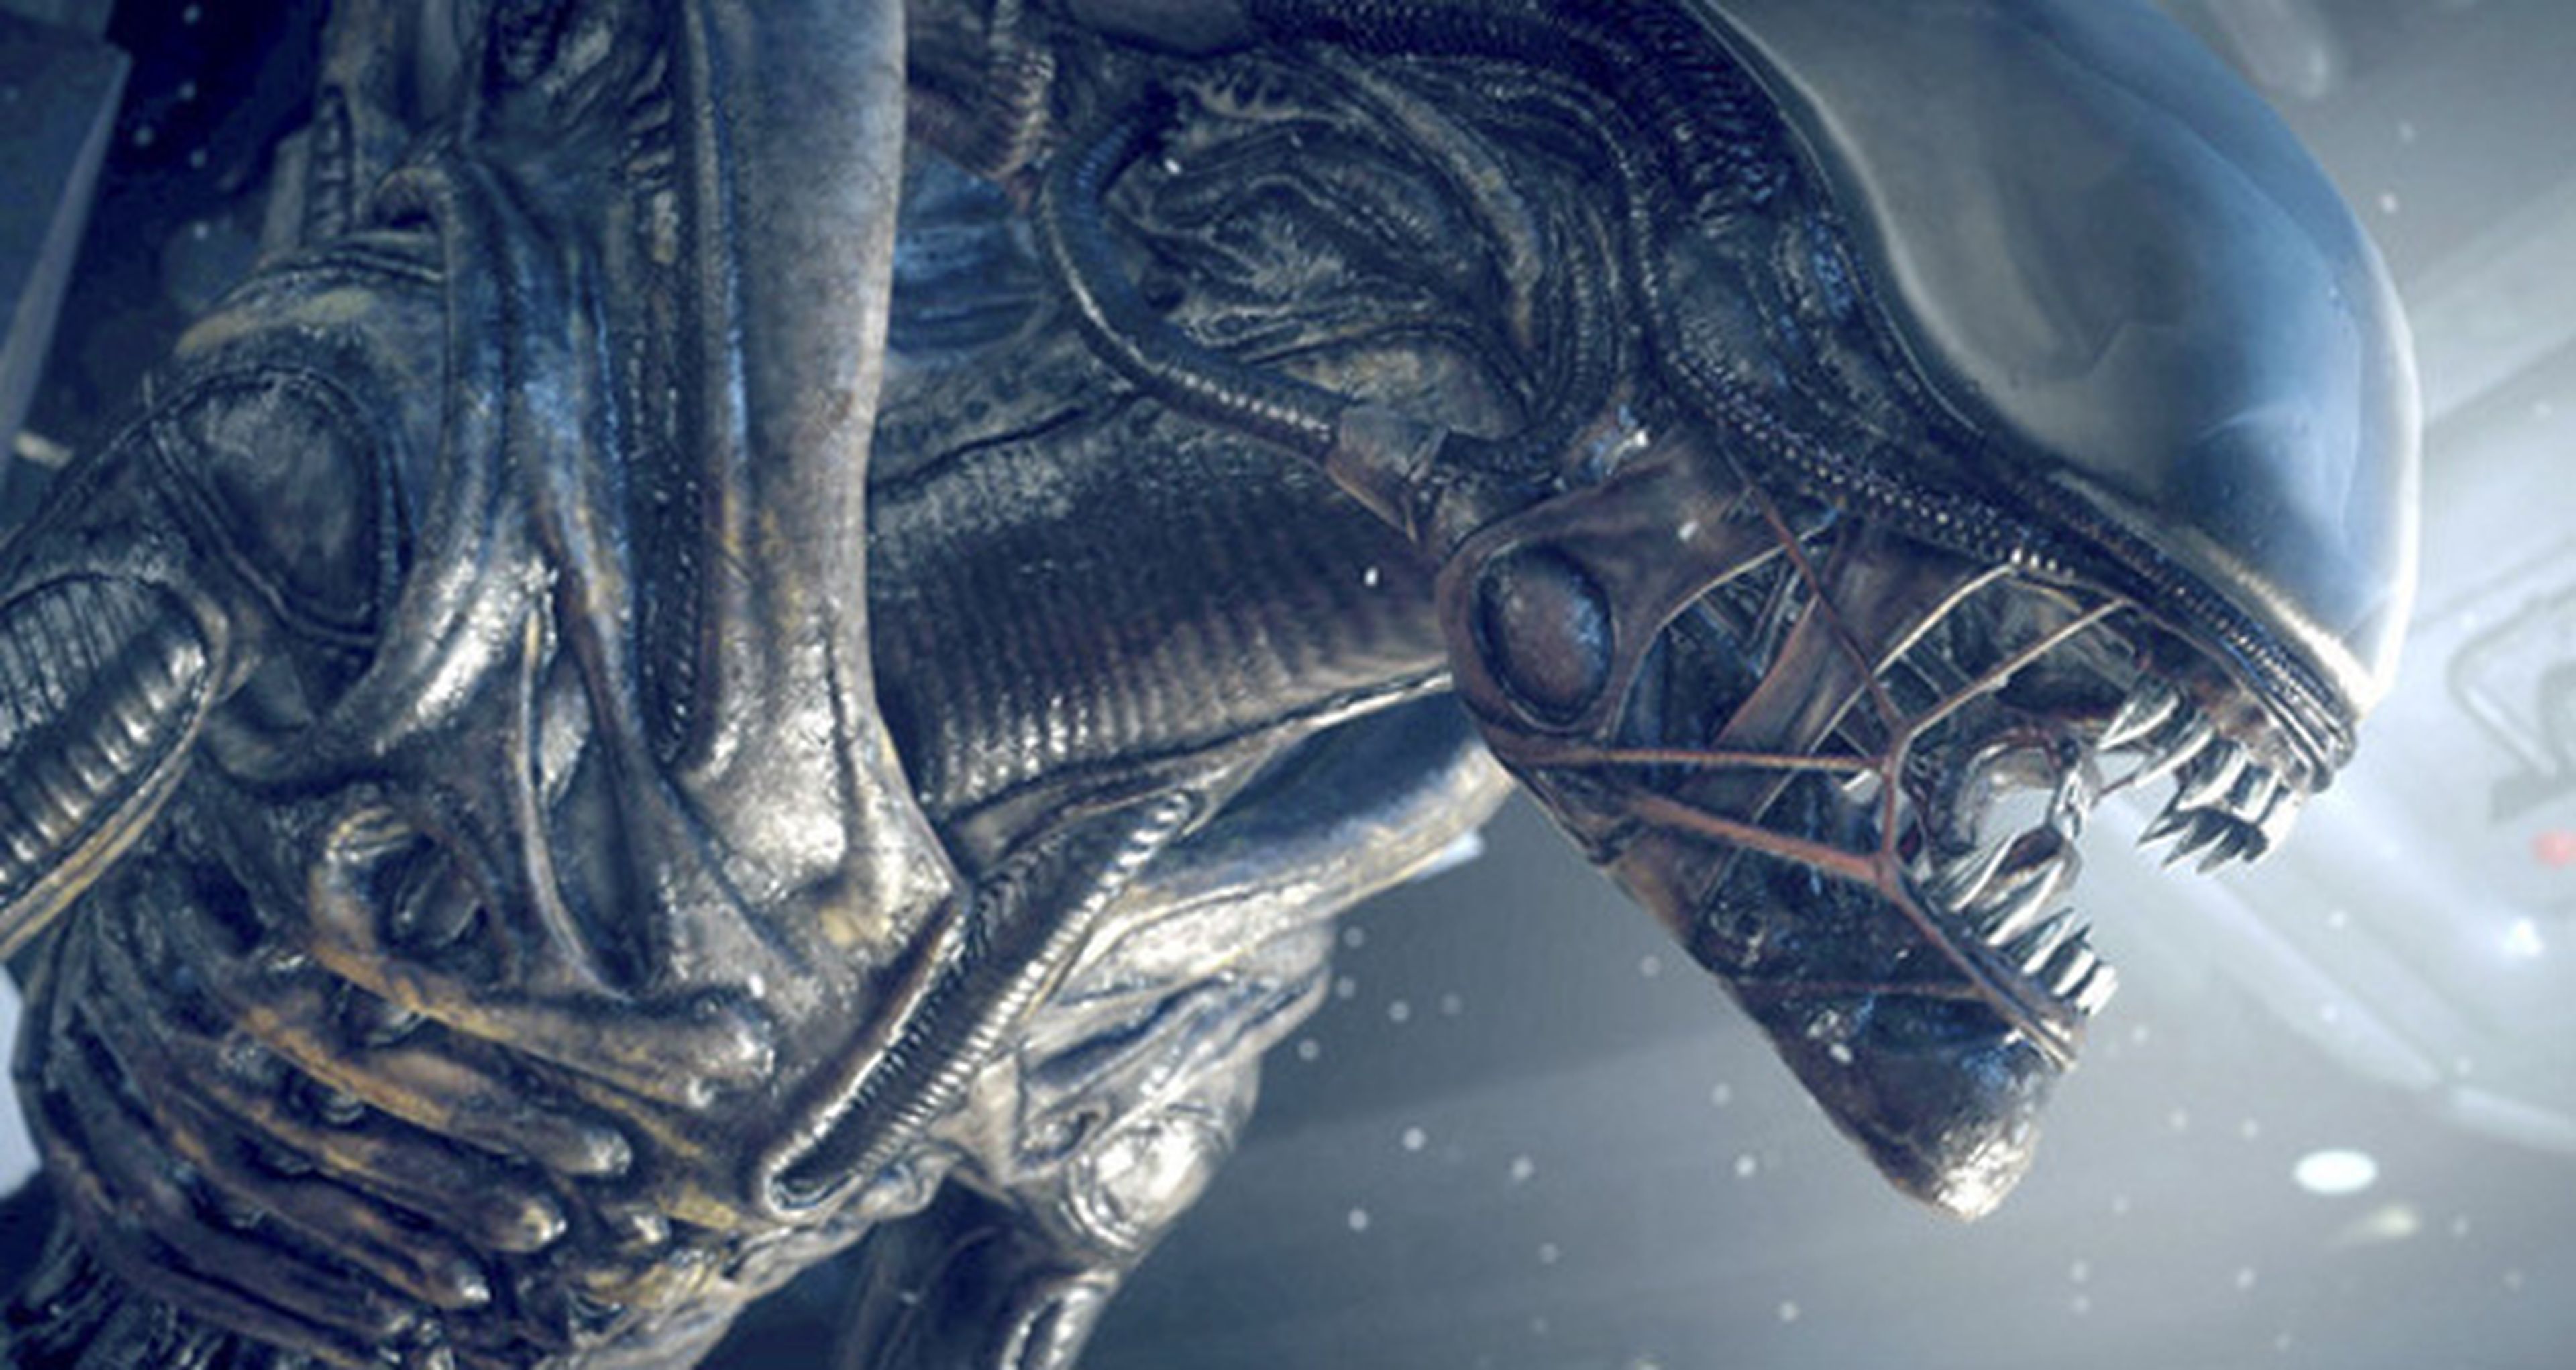 Prometheus tendrá dos secuelas además de Alien: Covenant